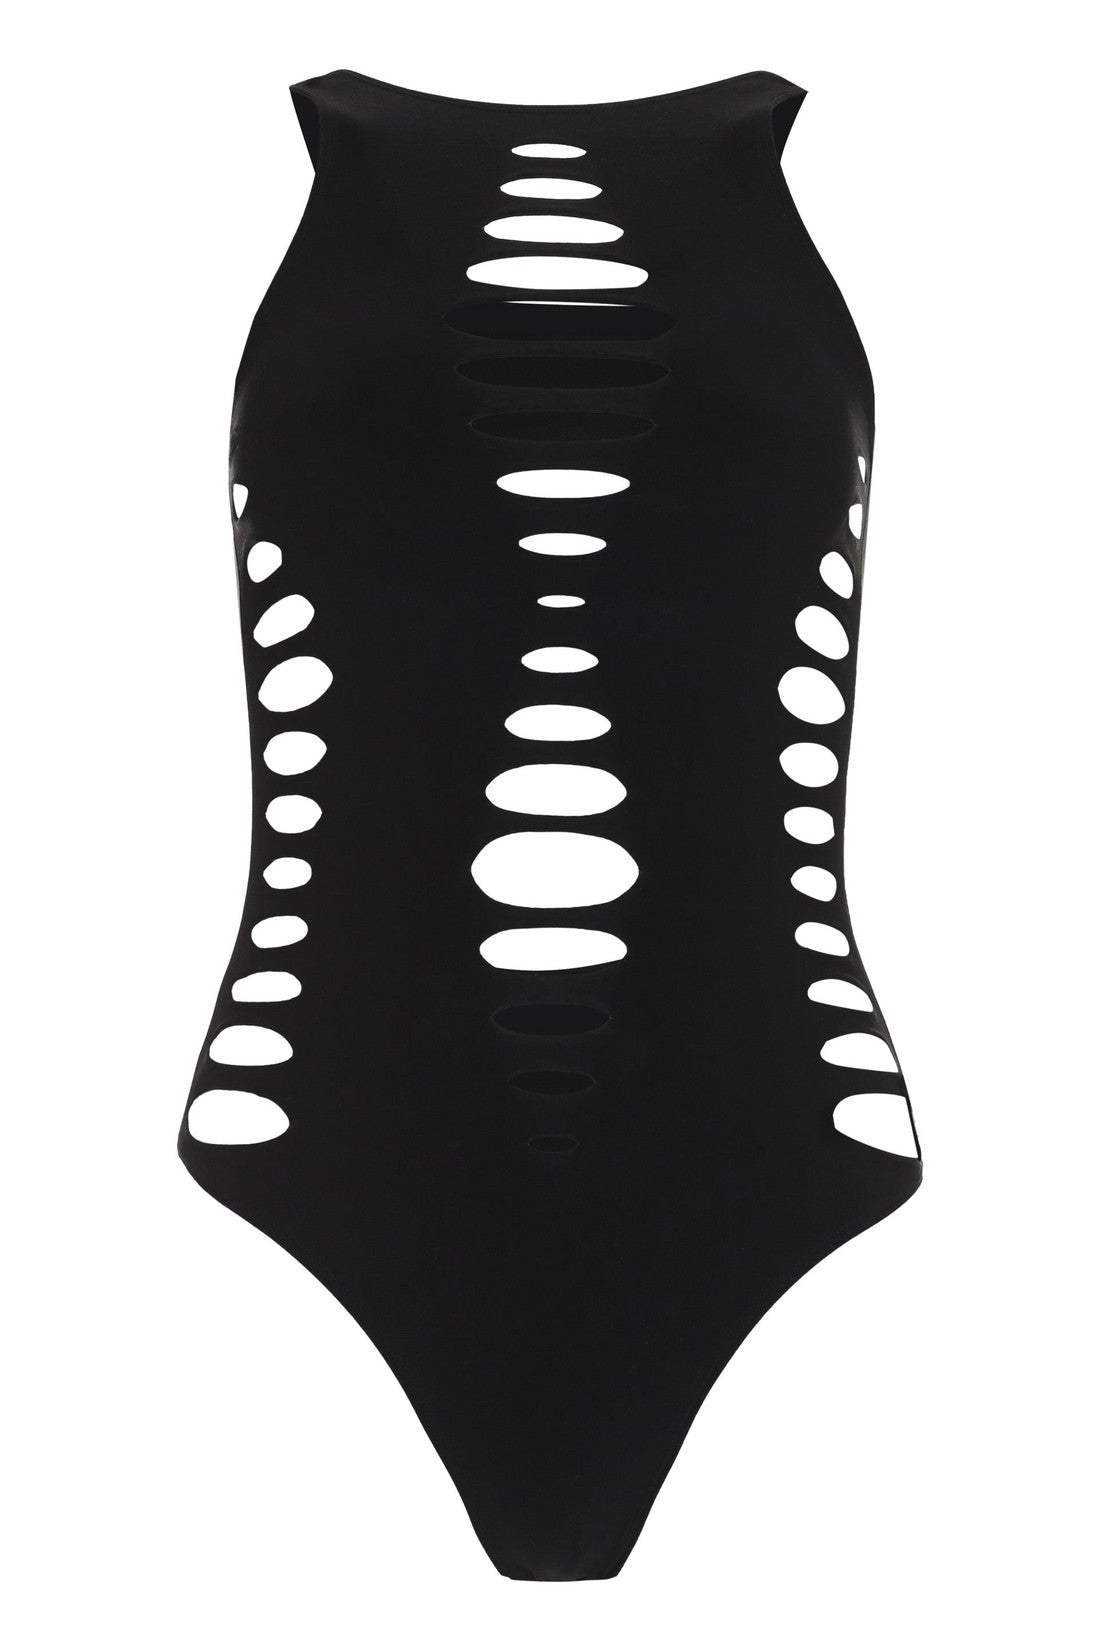 Versace-OUTLET-SALE-One-piece swimsuit-ARCHIVIST